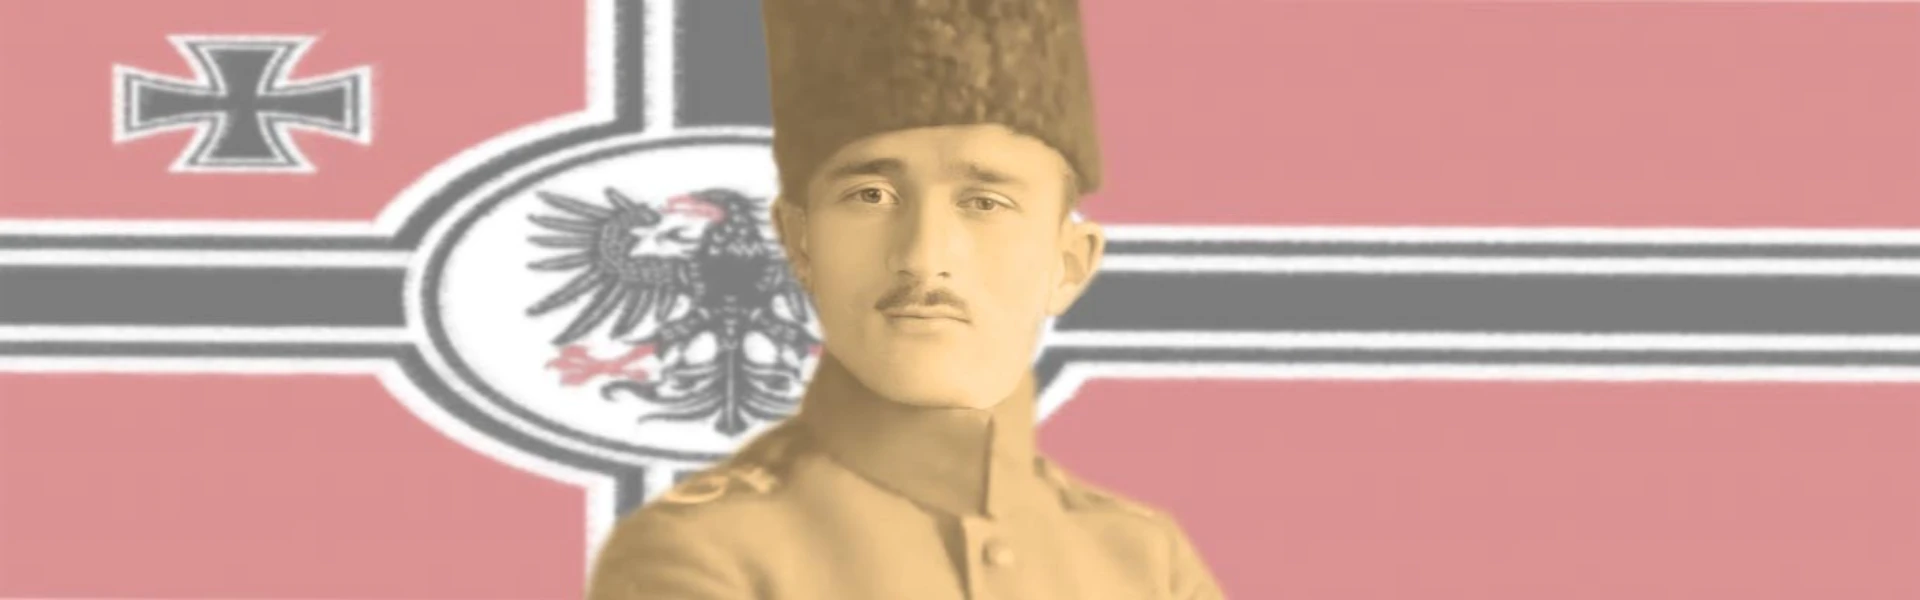 The Mysterious Ingush of the World War I, Khadyshko Arsamakov